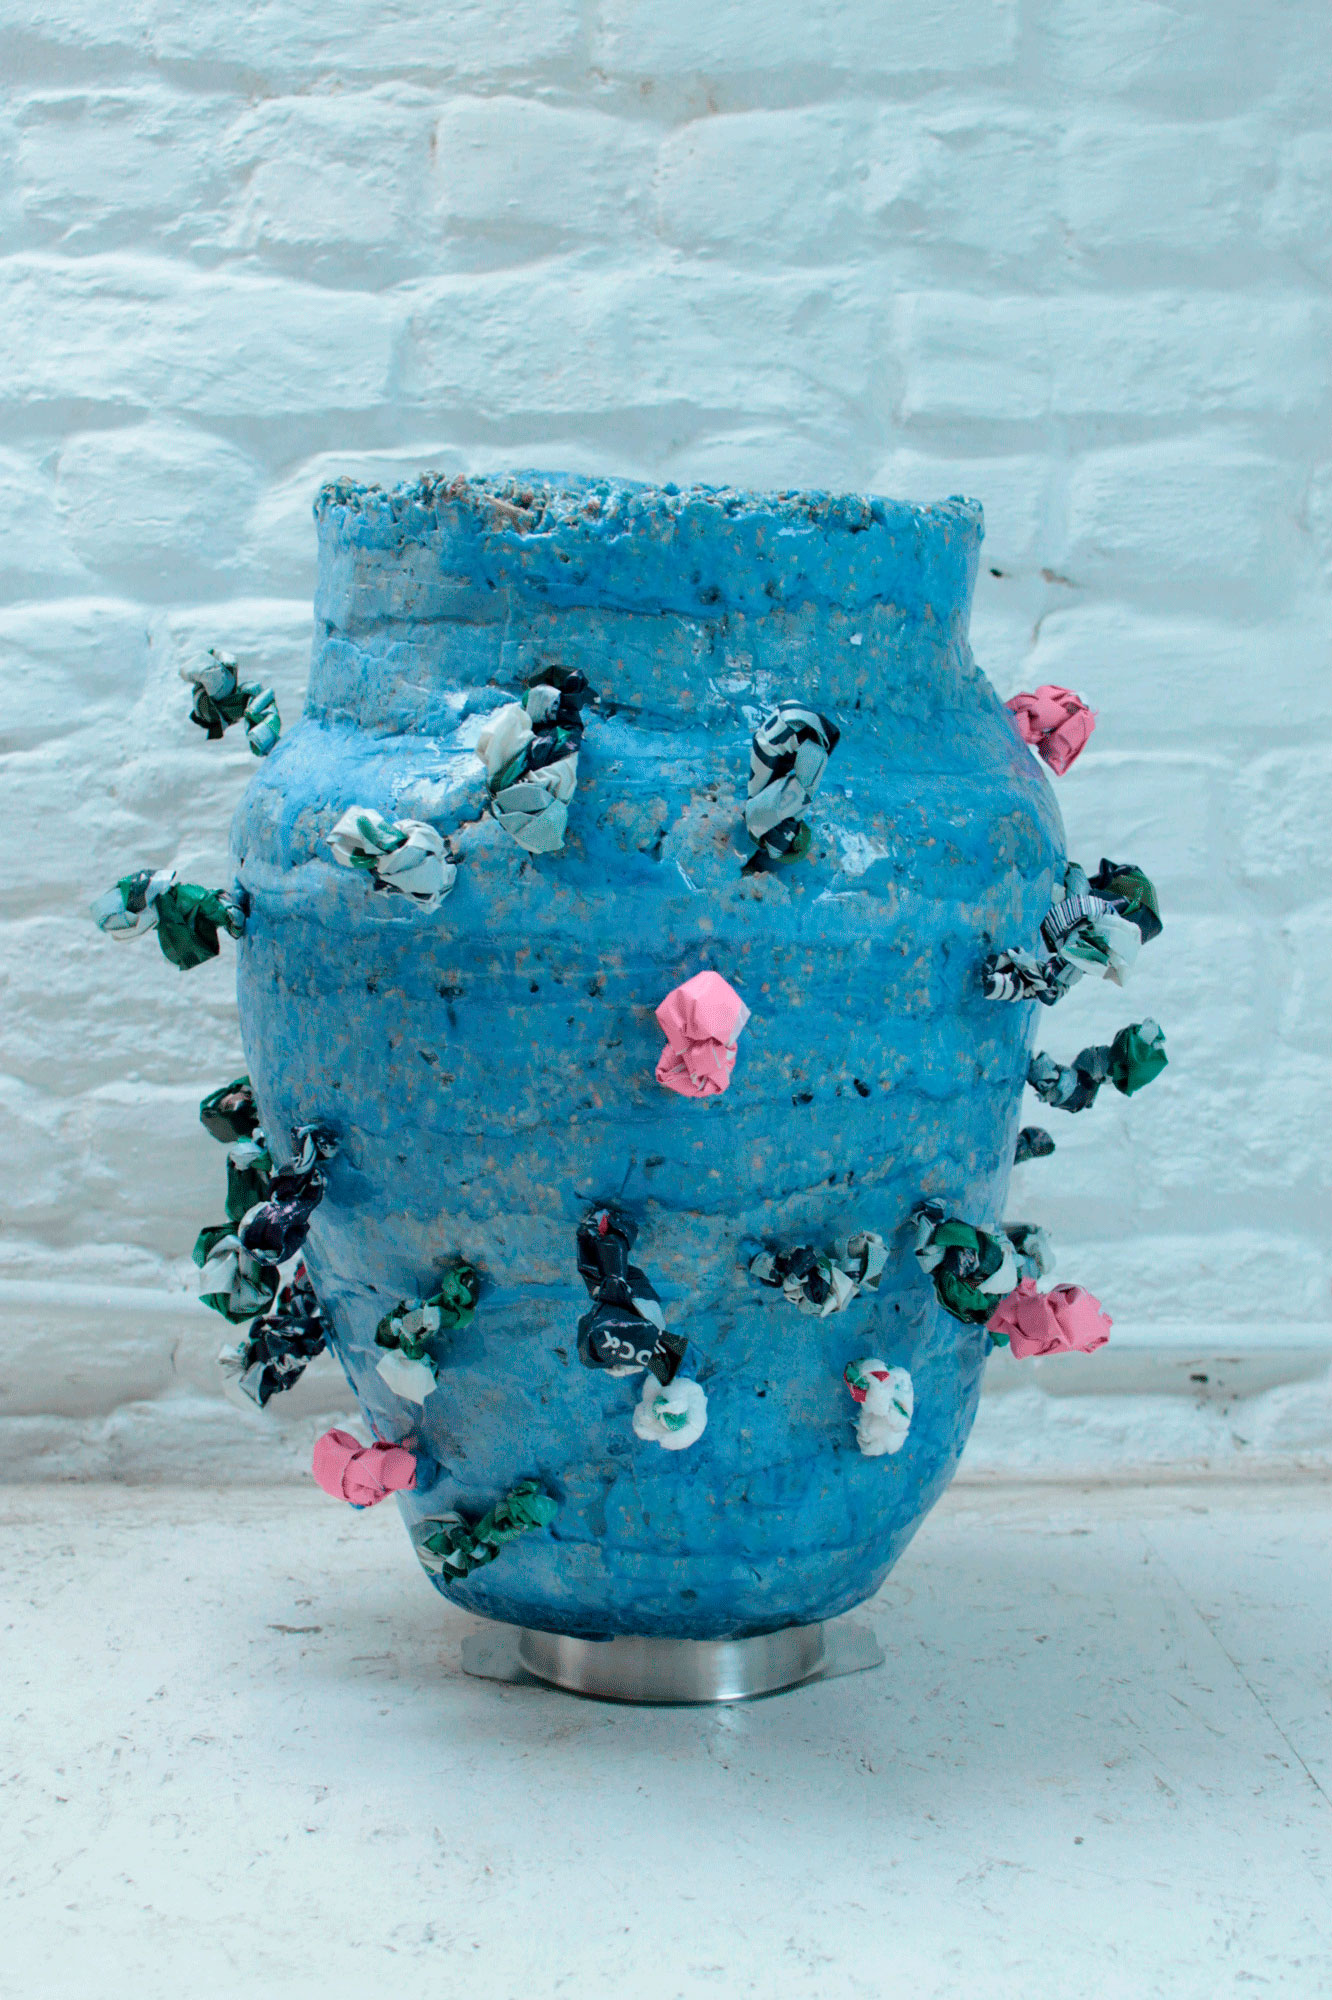 Blue knot vase. Biorésine, copeaux de bois, pigments, sacs en plastique, bol en inox. Fabrication des moules, fonderie. 43 x 37 x 42 cm. 2020